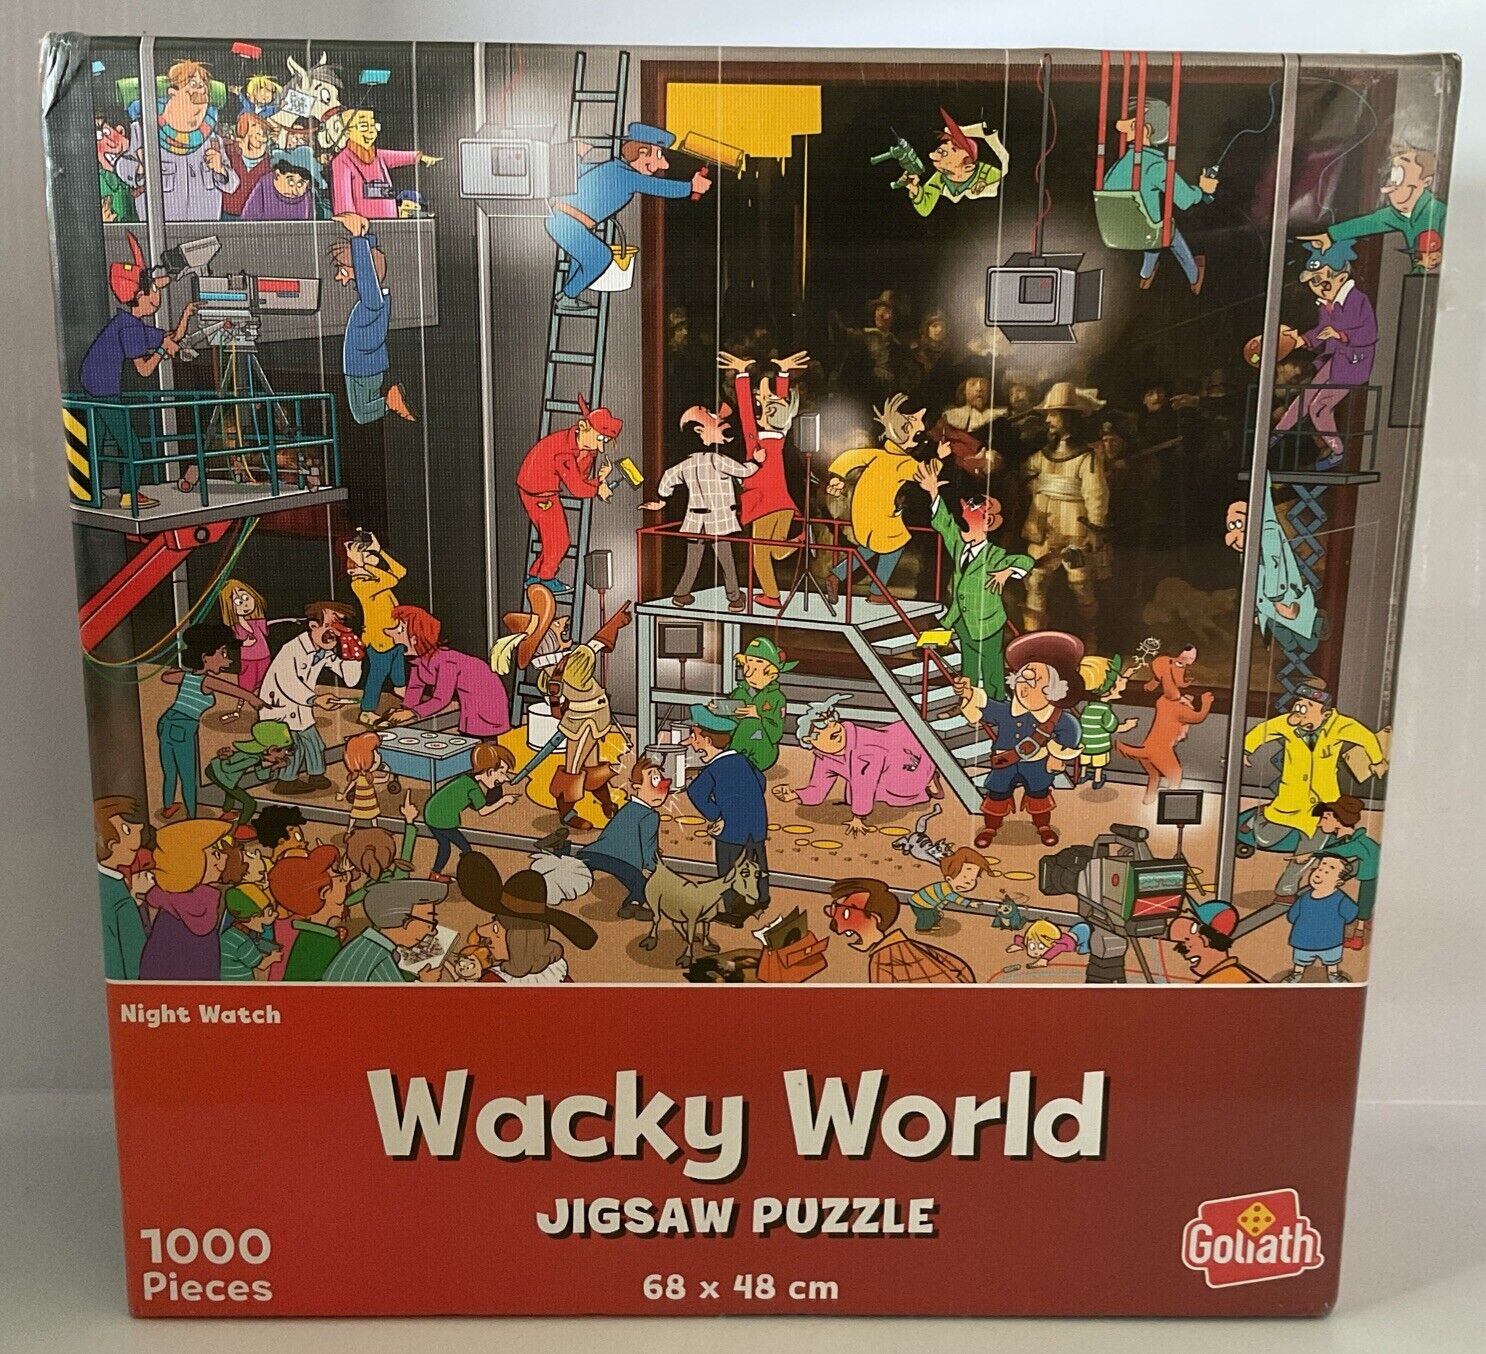 WACKY WORLD JIGSAW - Night Watch - 1000 Piece Brand New Shrinkwrap Sealed